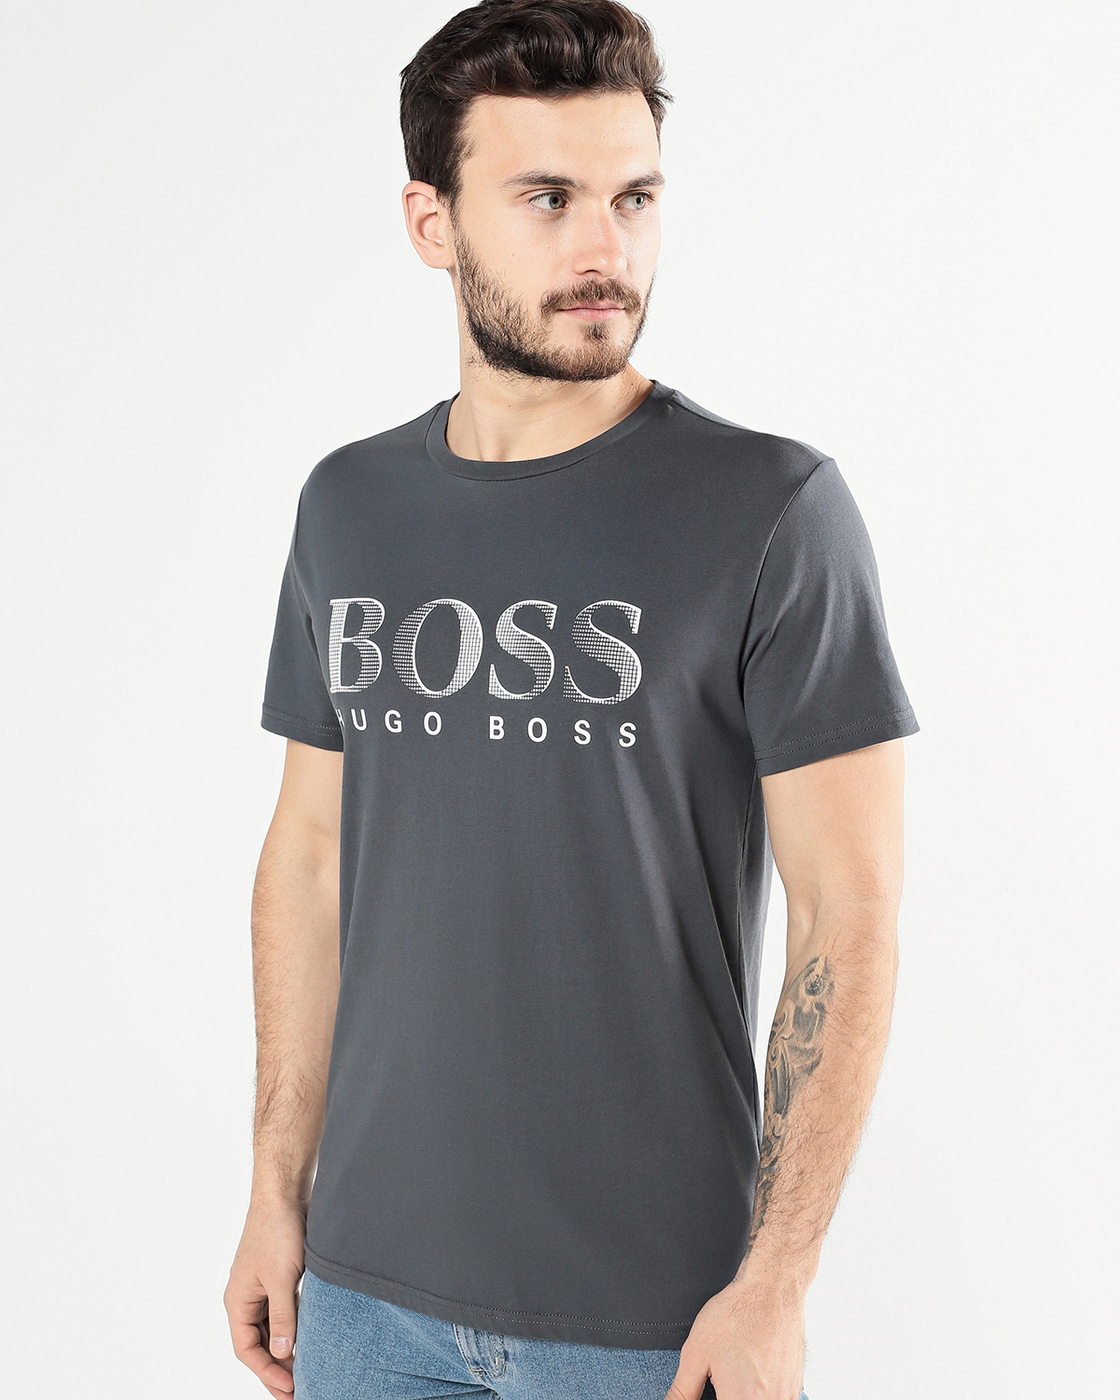 Купить футболку hugo. Футболка Boss Hugo Boss. Boss jugo Boss футболки. Футболка Хуго босс мужские. Футболка Hugo Boss 50488330.